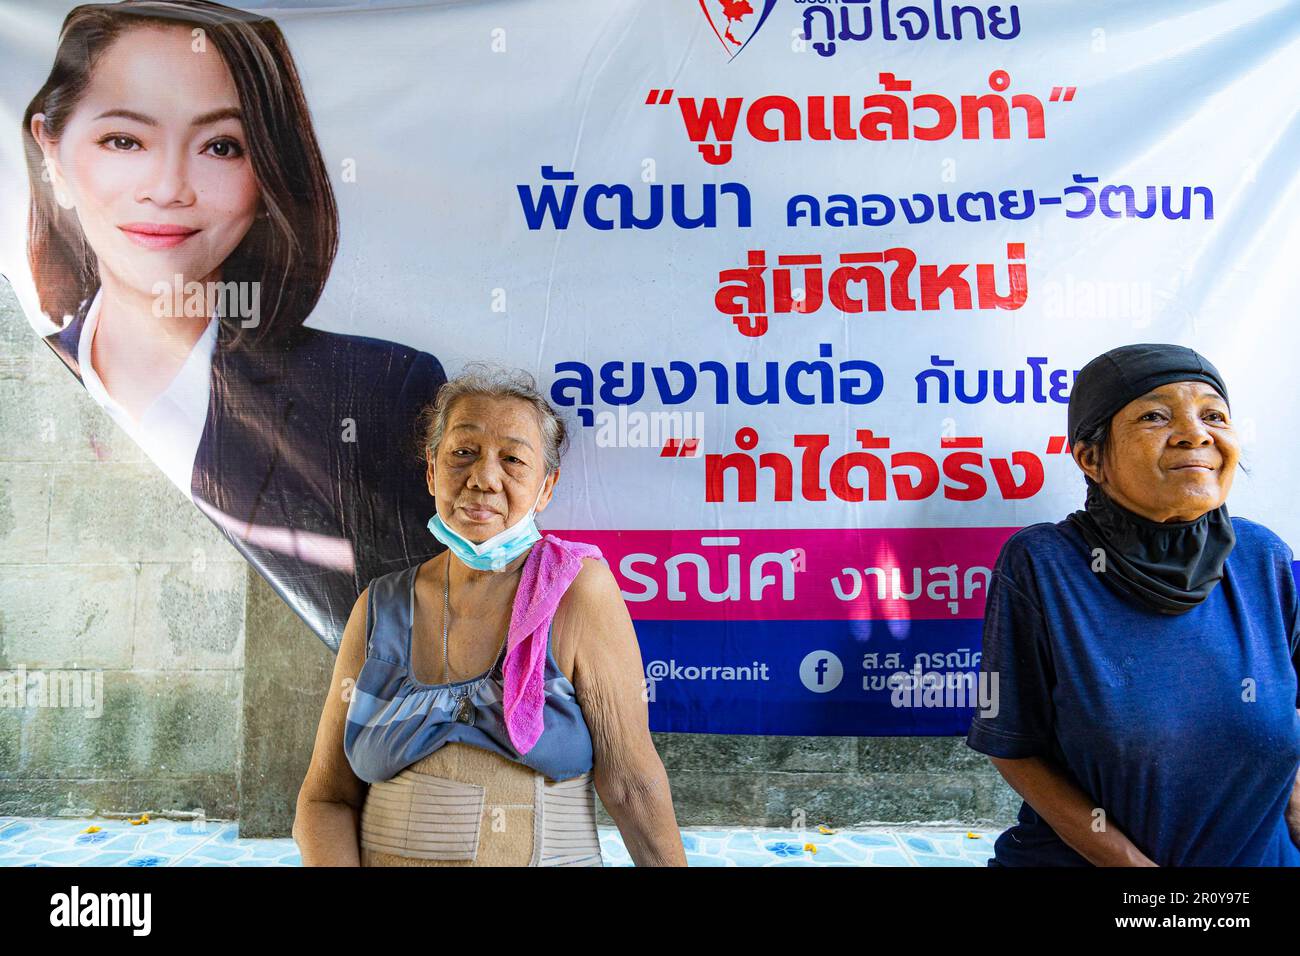 Résidents âgés devant une affiche électorale pour le candidat Watanya Wongphasri du parti Bumjaithai dans le district de Khlongtoey 'lum' à Bangkok. Affiches électorales dans le district de Khlongtoey 'lum' à Bangkok. Khlongtoey compte plus de 100 000 000 personnes vivant dans des conditions souvent difficiles et densément peuplées, et constitue une importante circonscription électorale pour les candidats de Bangkok lors de la campagne électorale de 2023 Banque D'Images